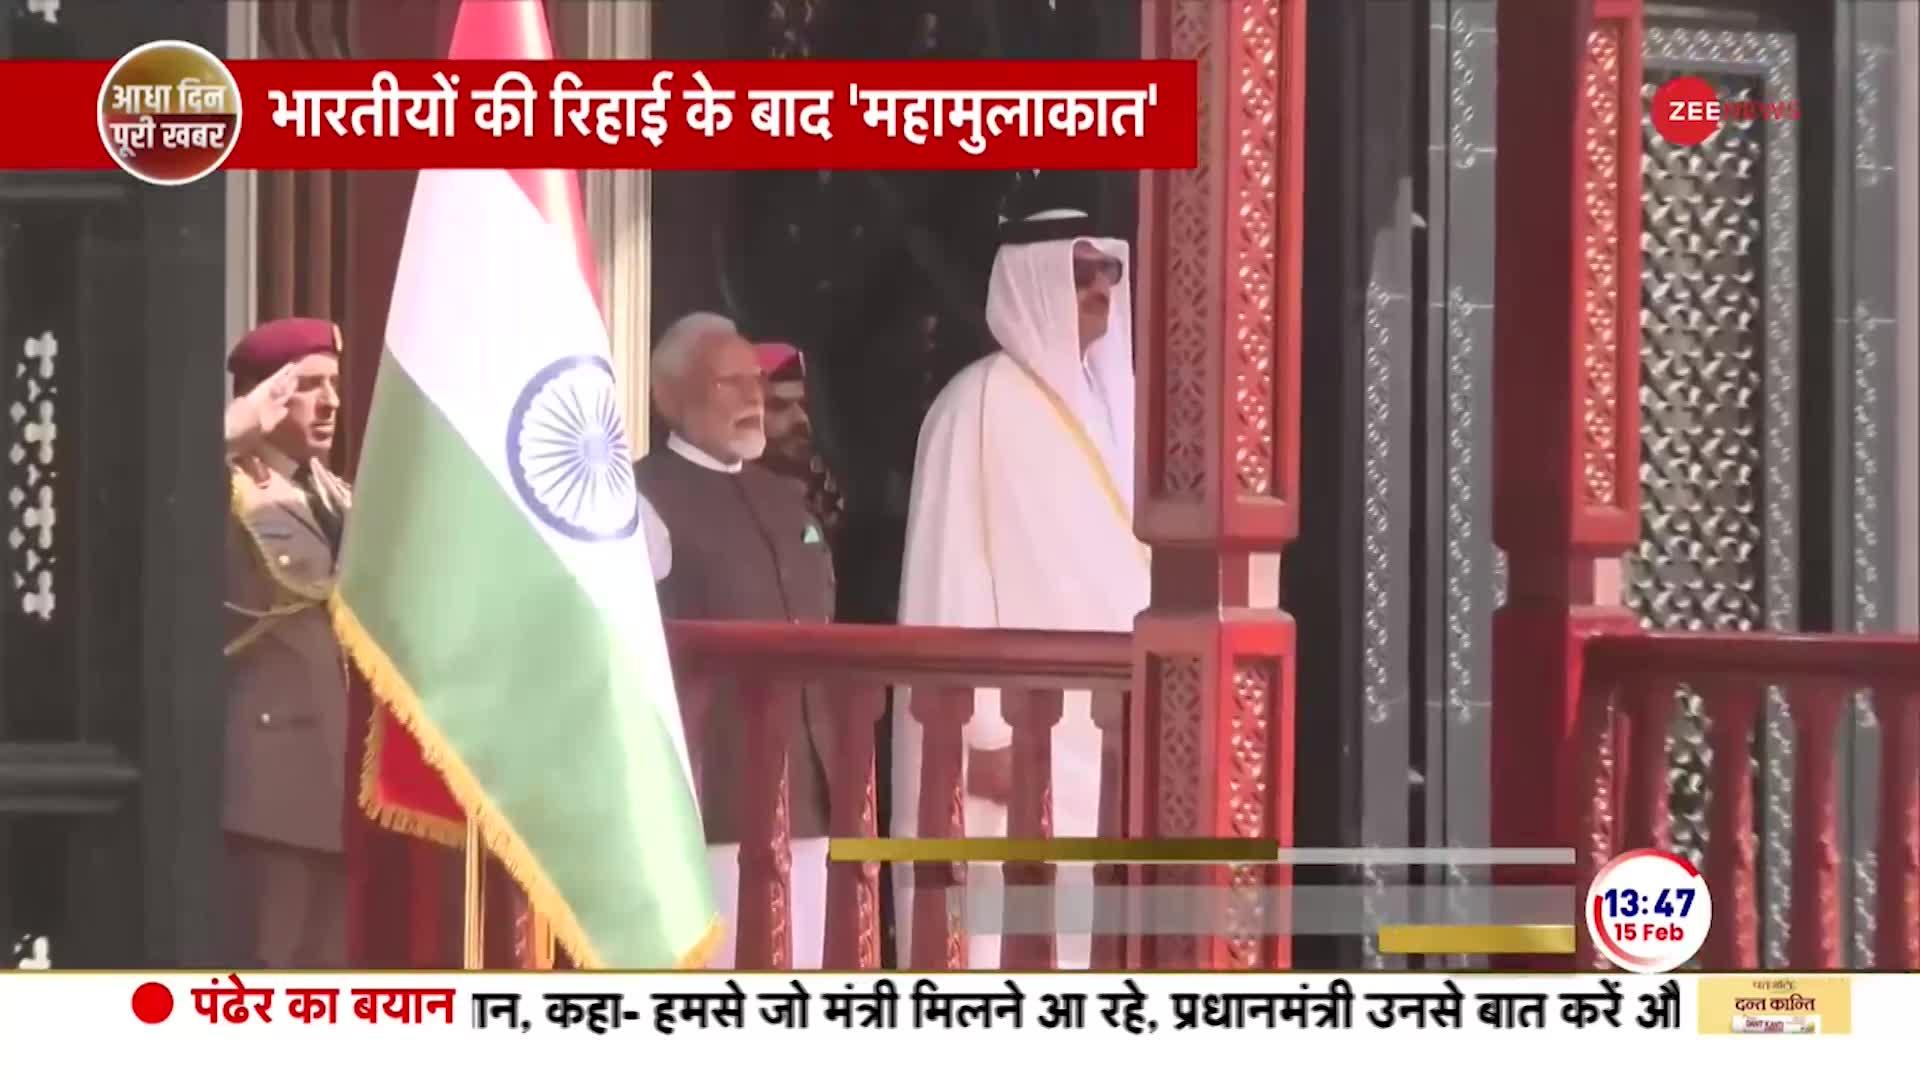 भारतीयों की रिहाई के बाद मोदी-तमीम की महामुलाक़ात | PM Modi Meets Amir Sheikh Tamim